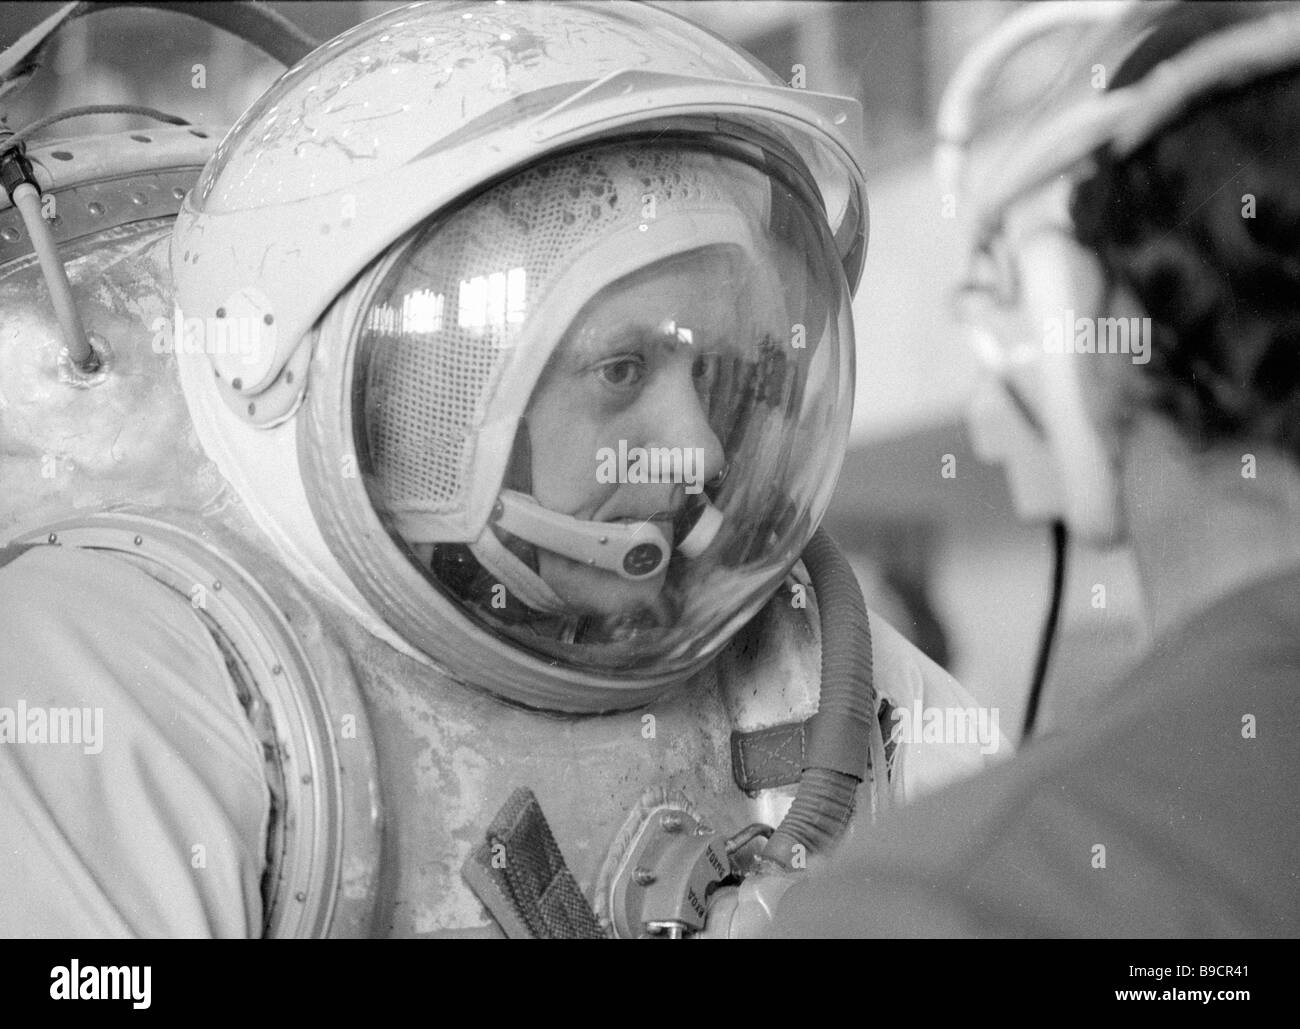 Второй космонавт вышедший в открытый космос. Савицкая космонавт. Савицкая 1984.